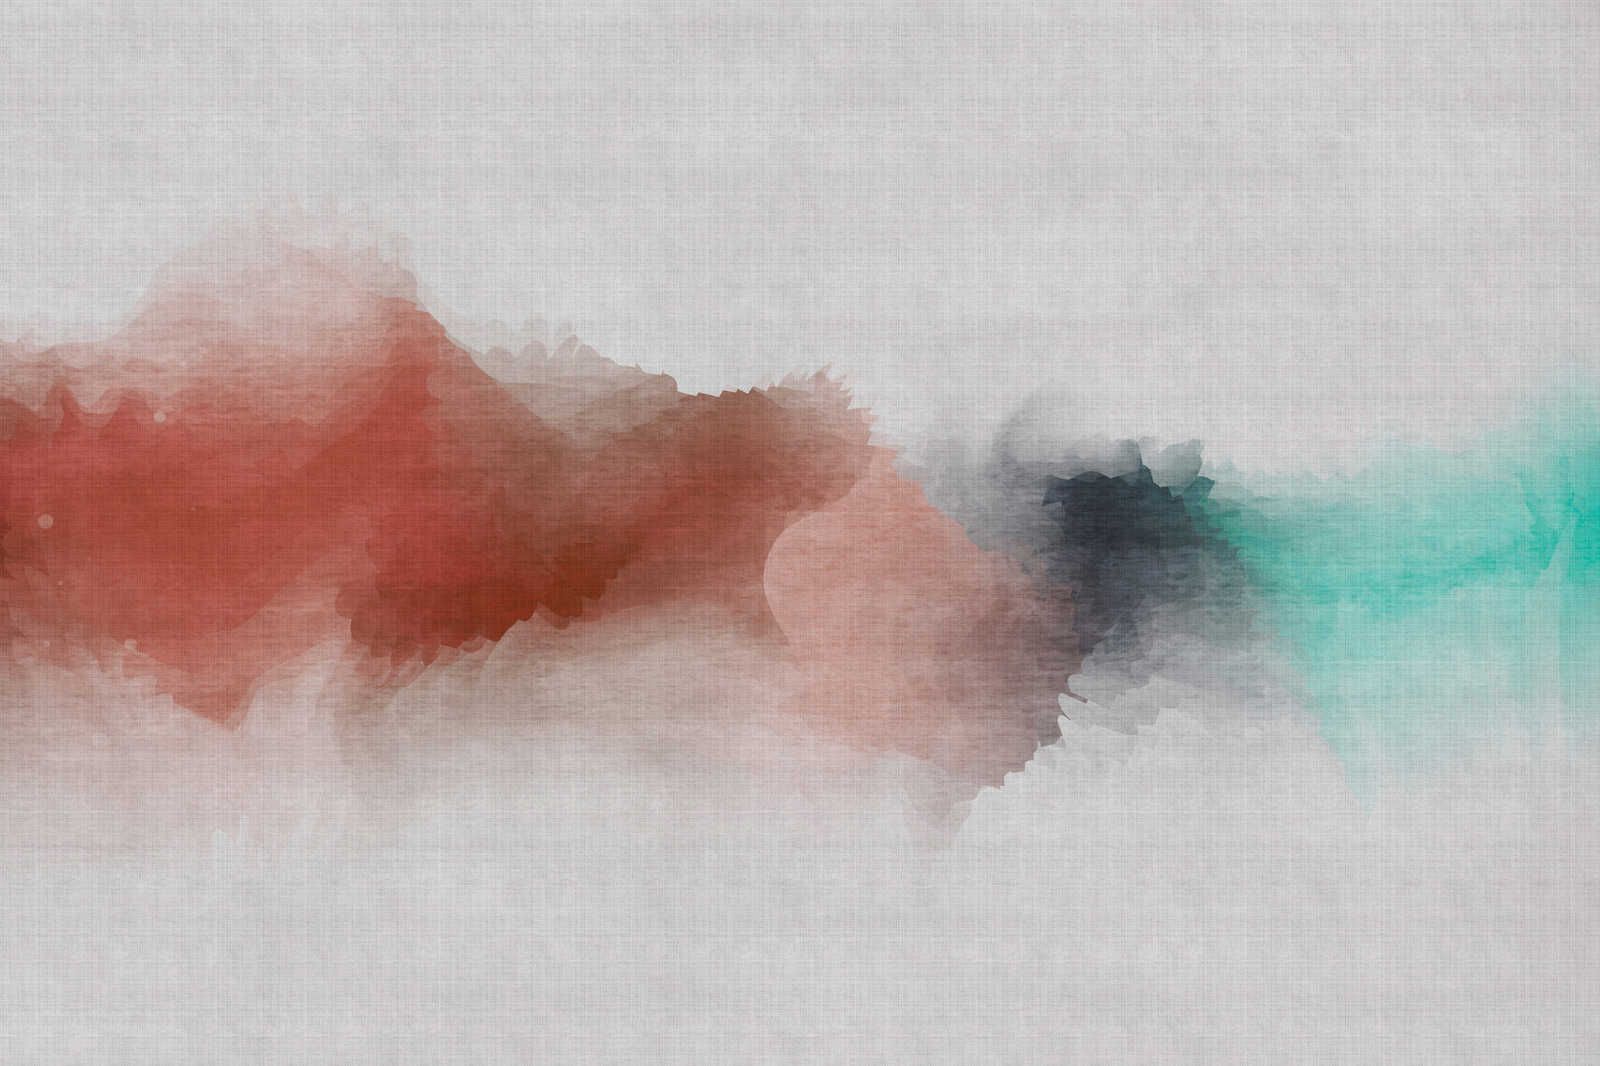             Daydream 2 - Toile aspect lin naturel avec tache de couleur style aquarelle - 1,20 m x 0,80 m
        